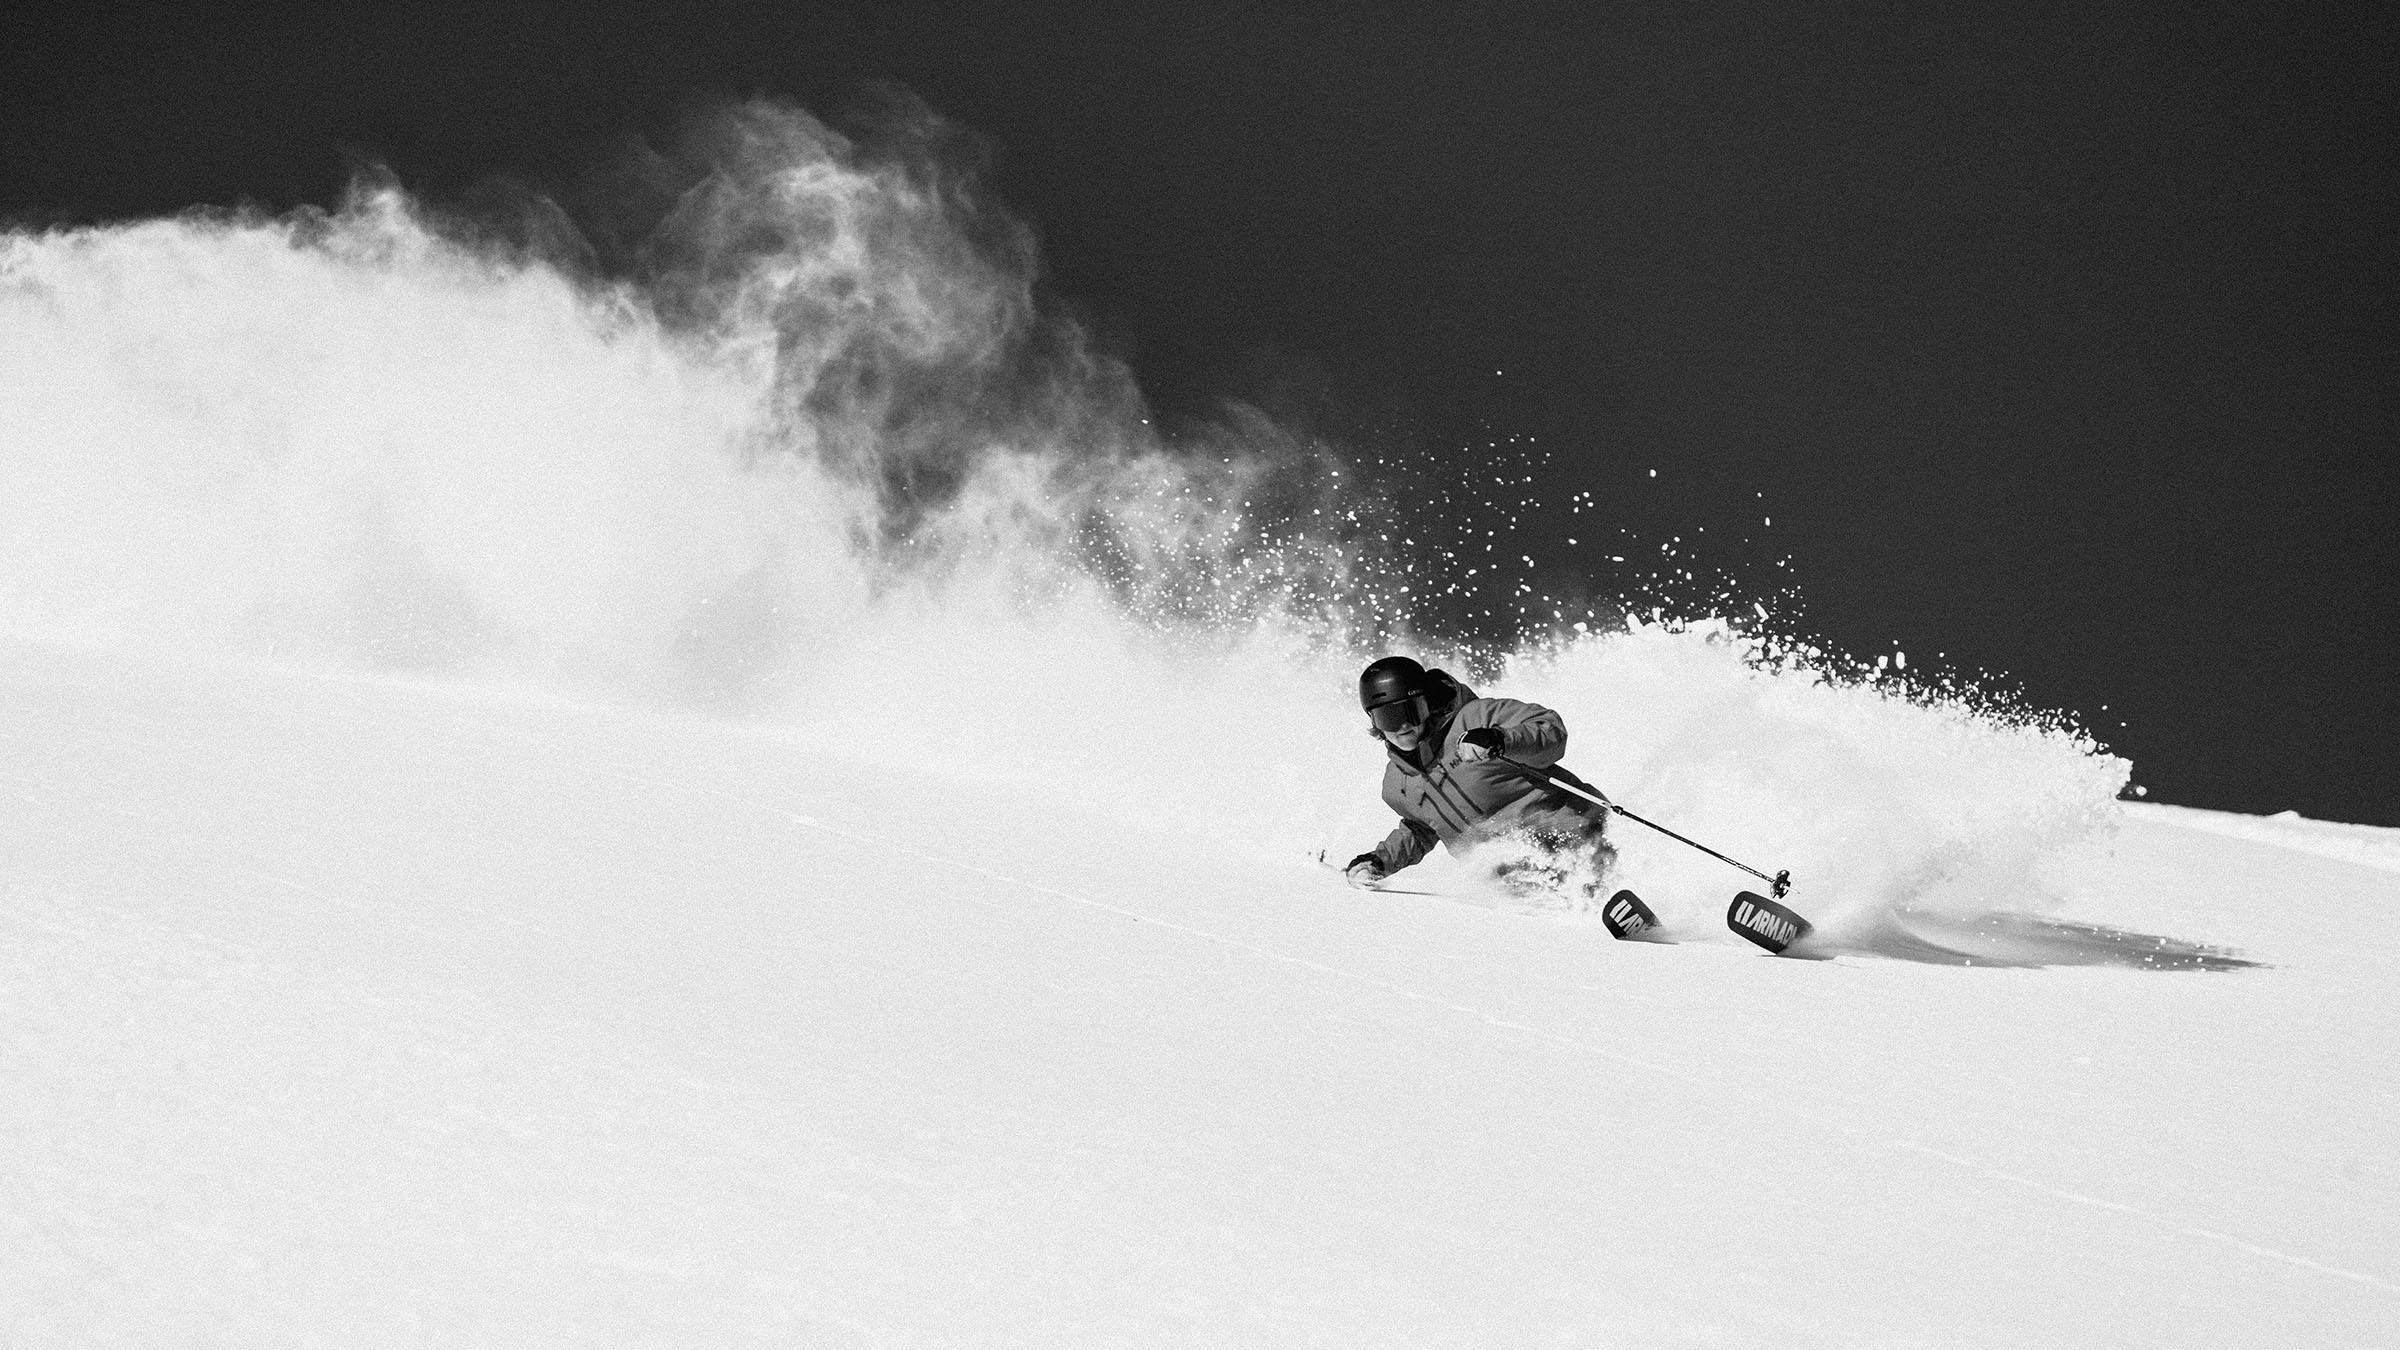 Skier powder action